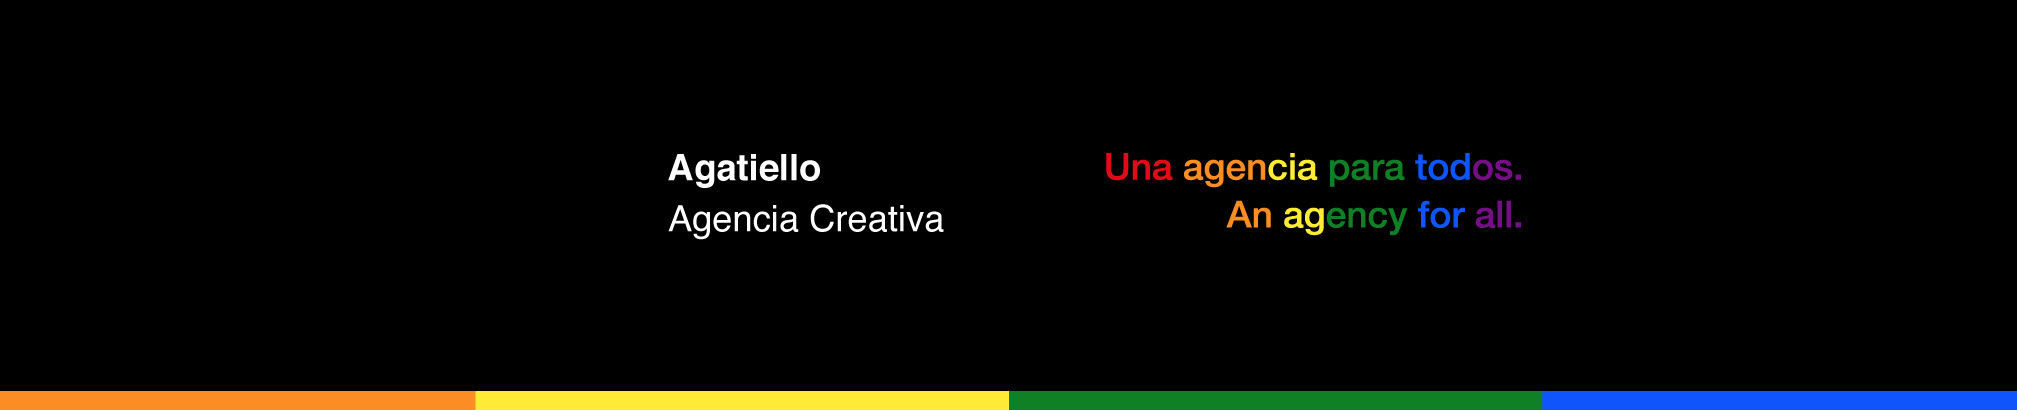 Agatiello Agencia Creativa's profile banner